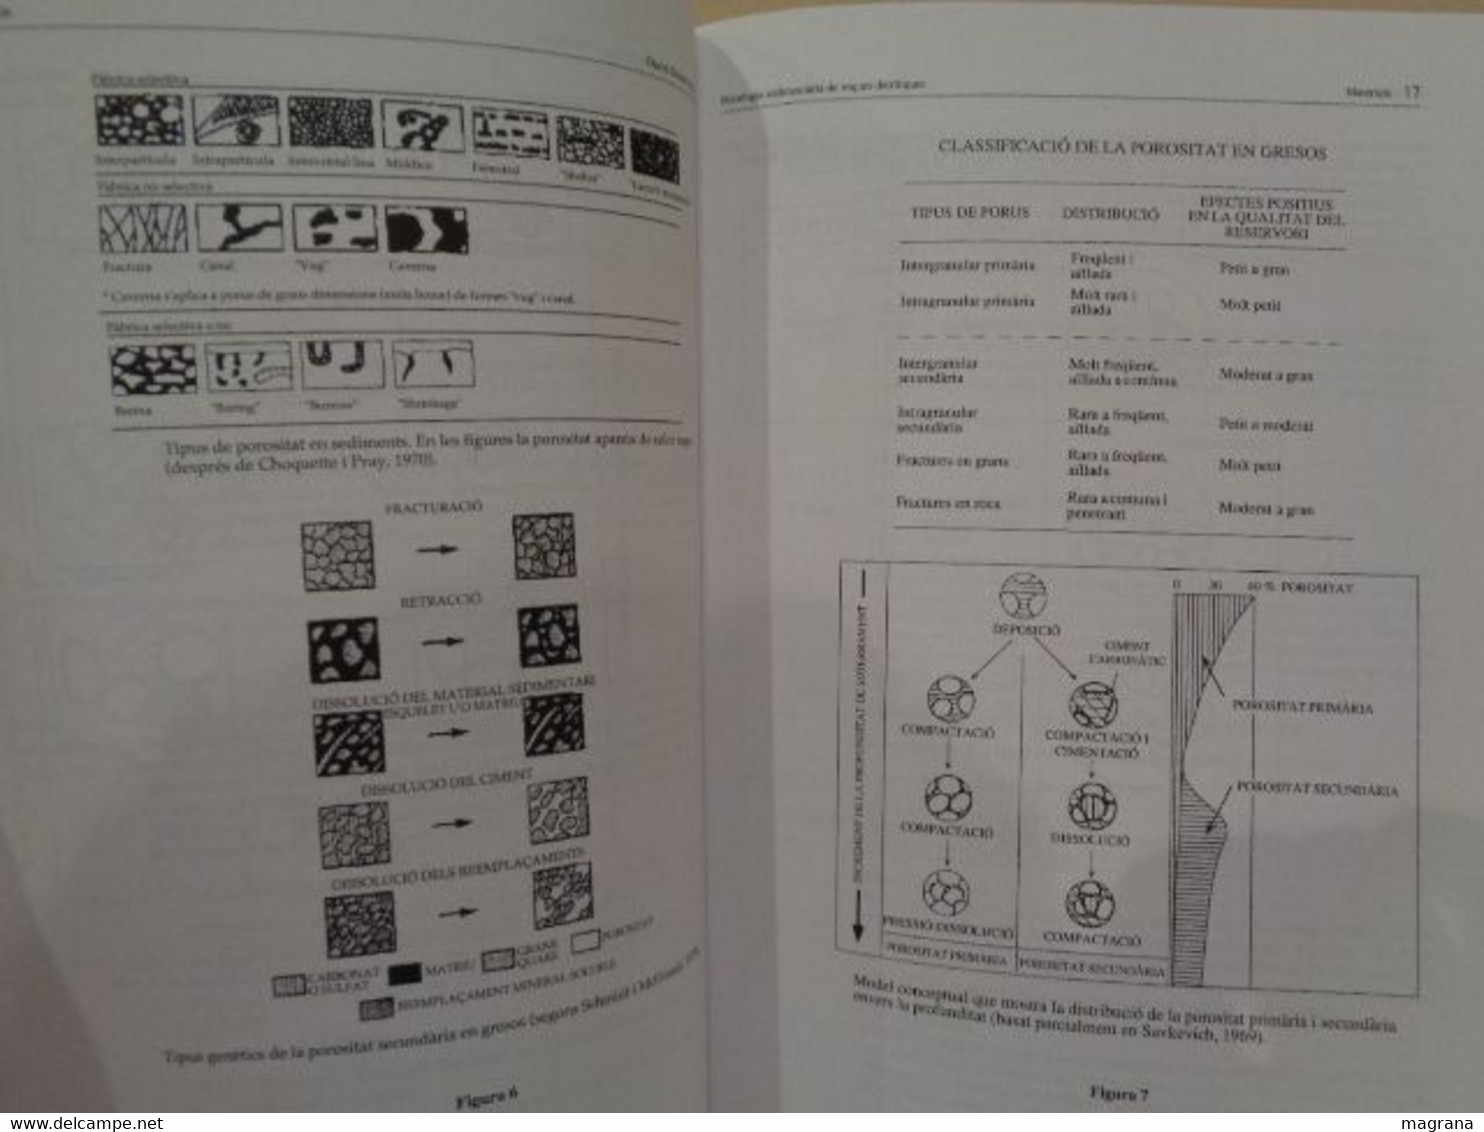 Petrologia sedimentària de les roques detrítiques. Manual de pràctiques de laboratori. David Gómez-Gras. 1999.